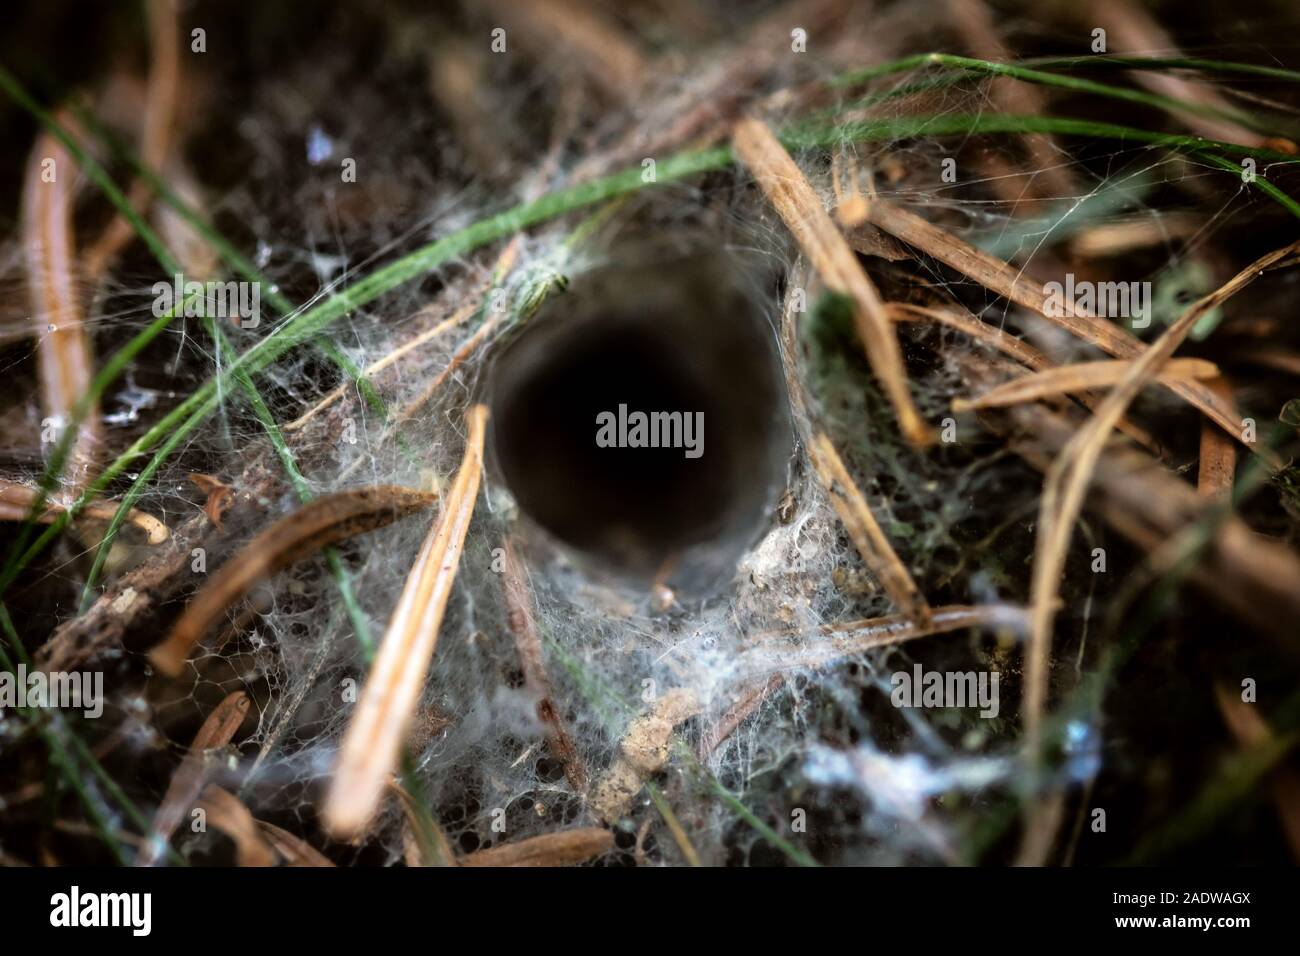 Primer plano de la araña de tela en embudo, anidan en el suelo de un bosque, la telaraña de un Agelenidae Foto de stock